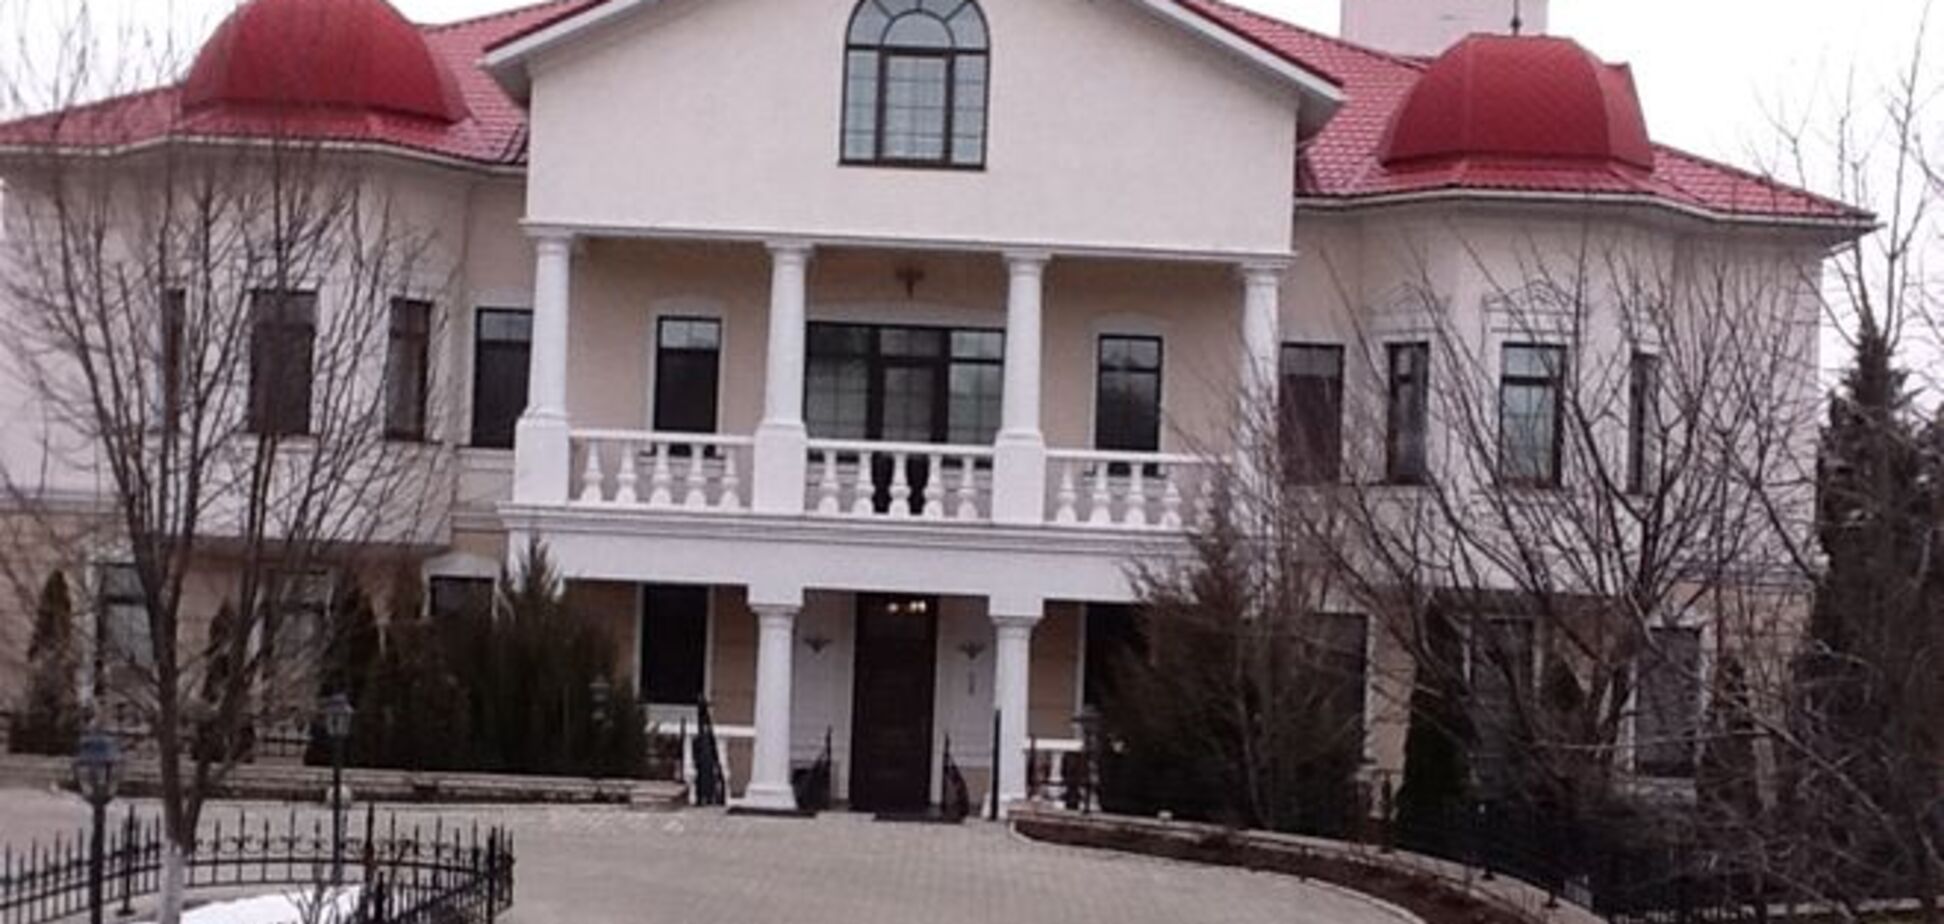 Єфремов поскаржився, що його будинок у Луганську пограбований: винесли багато